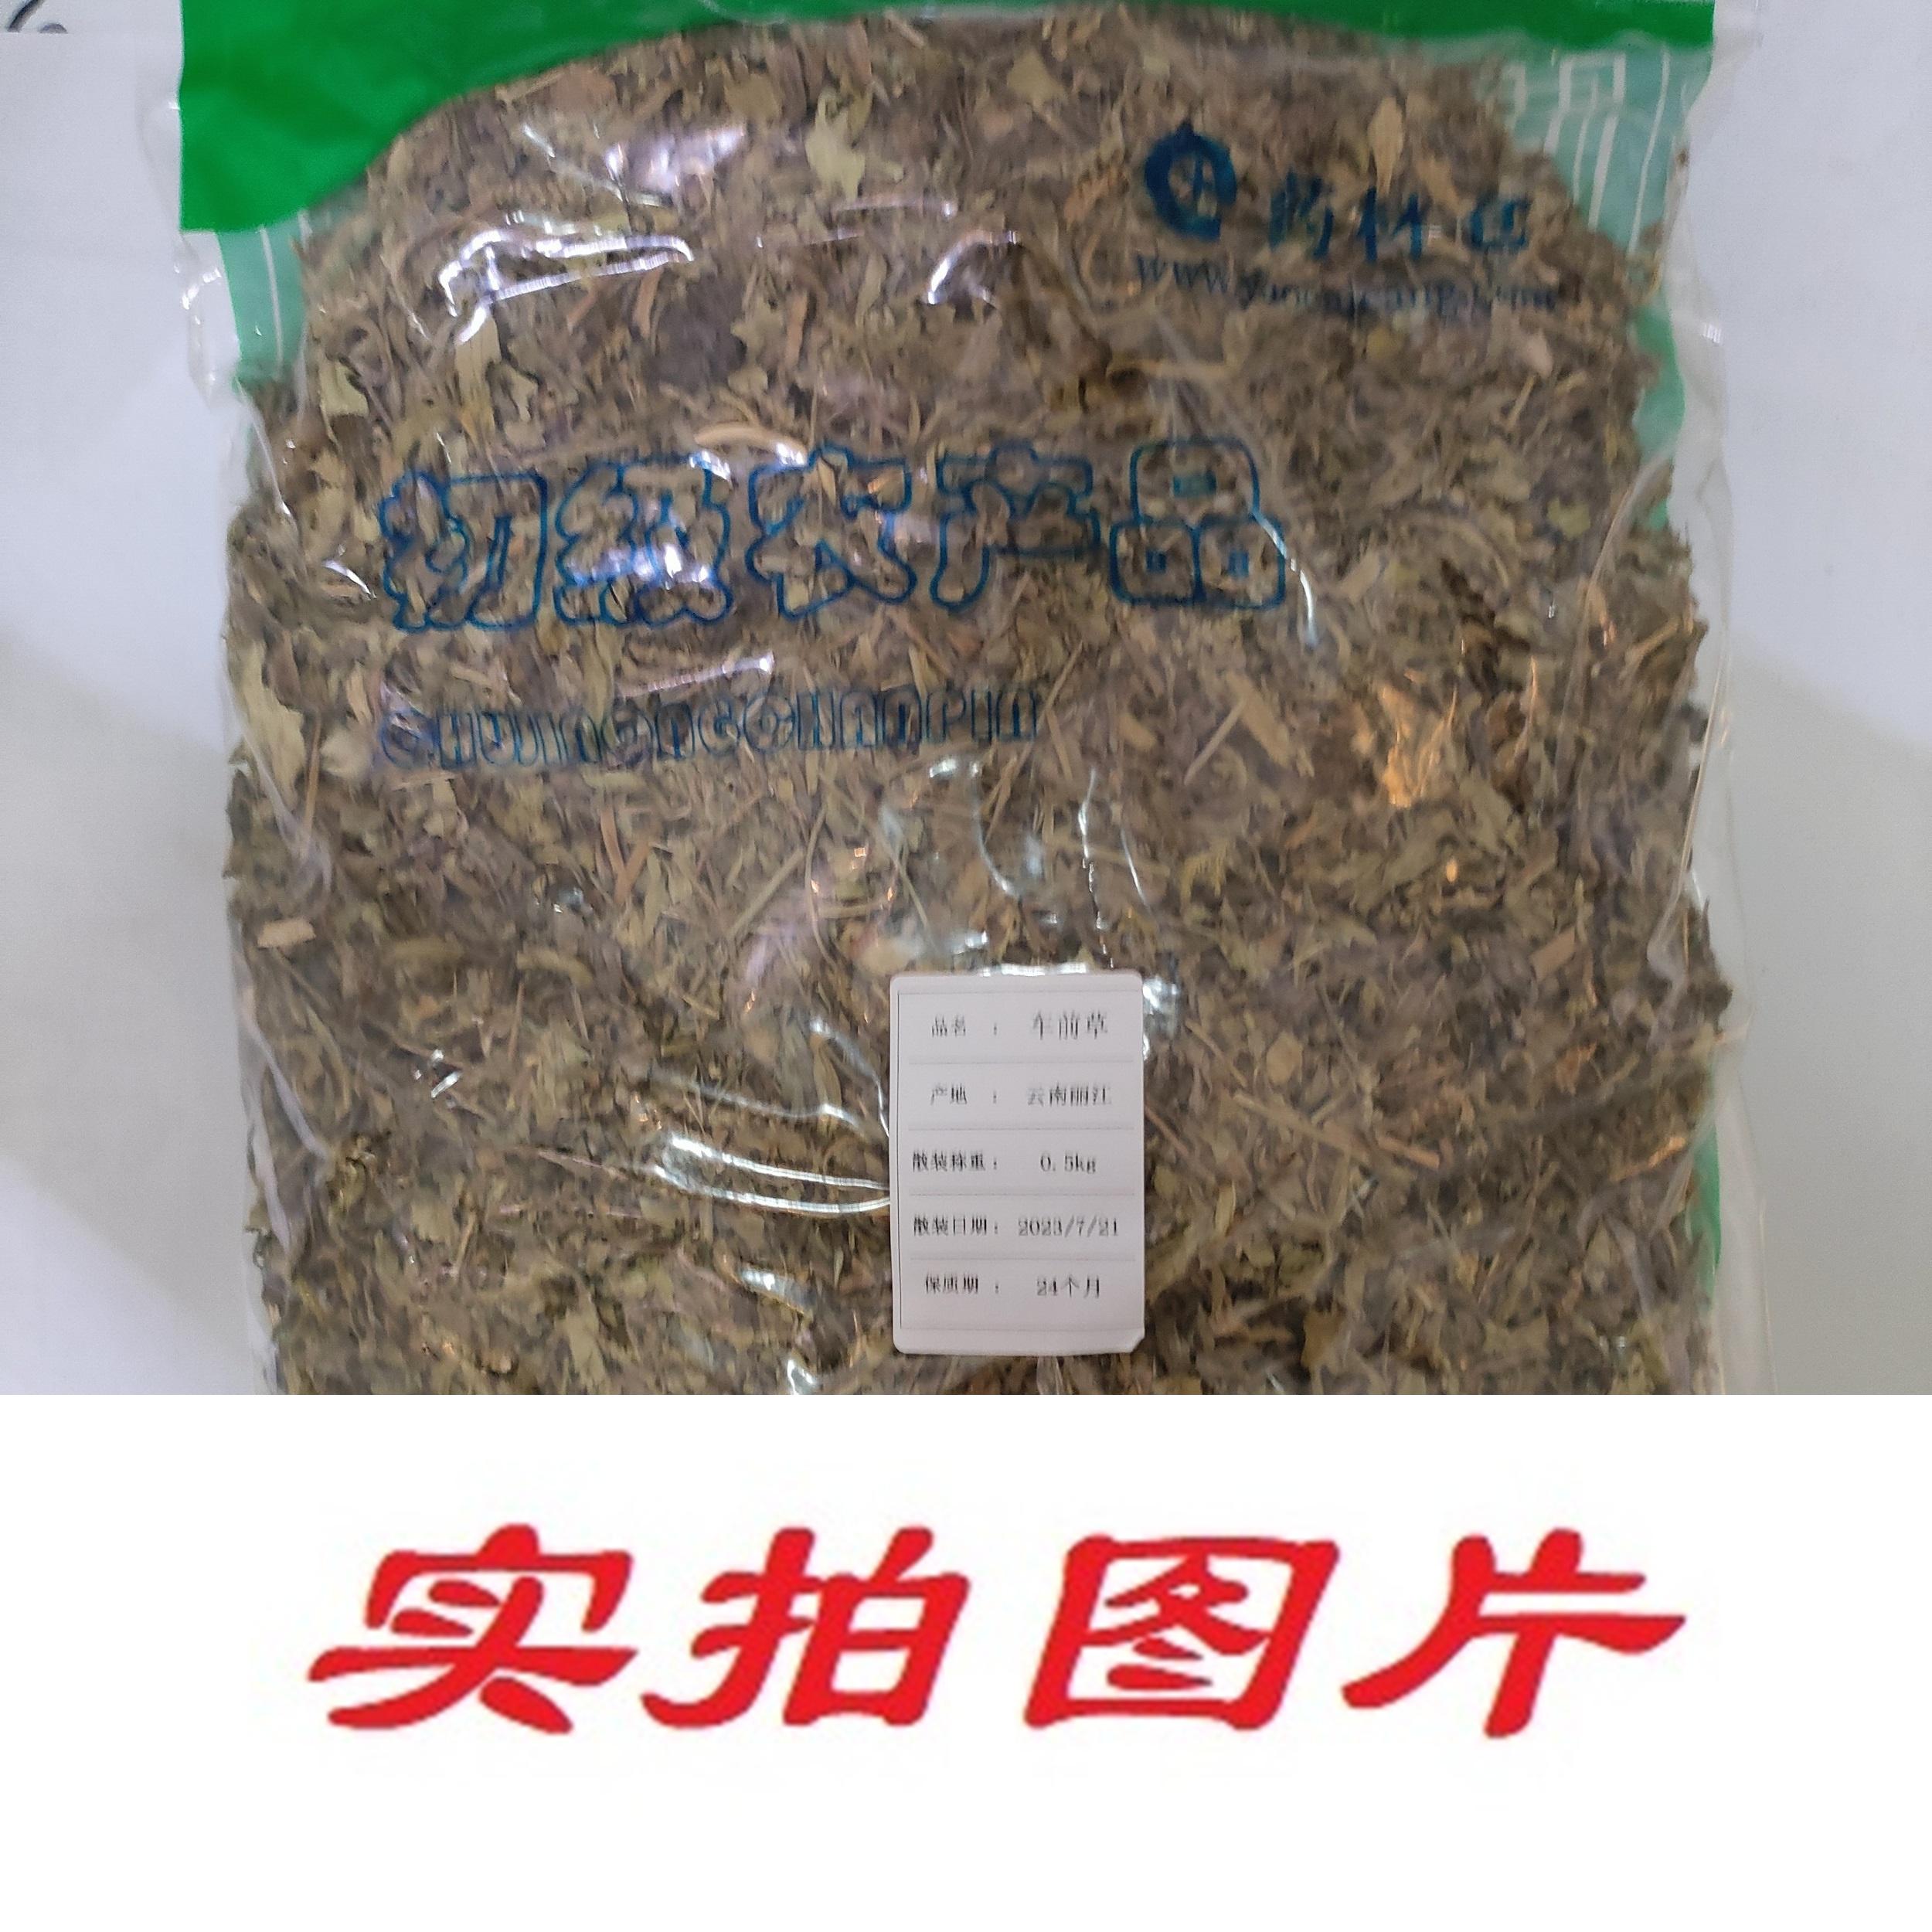 【】车前草0.5kg-农副产品